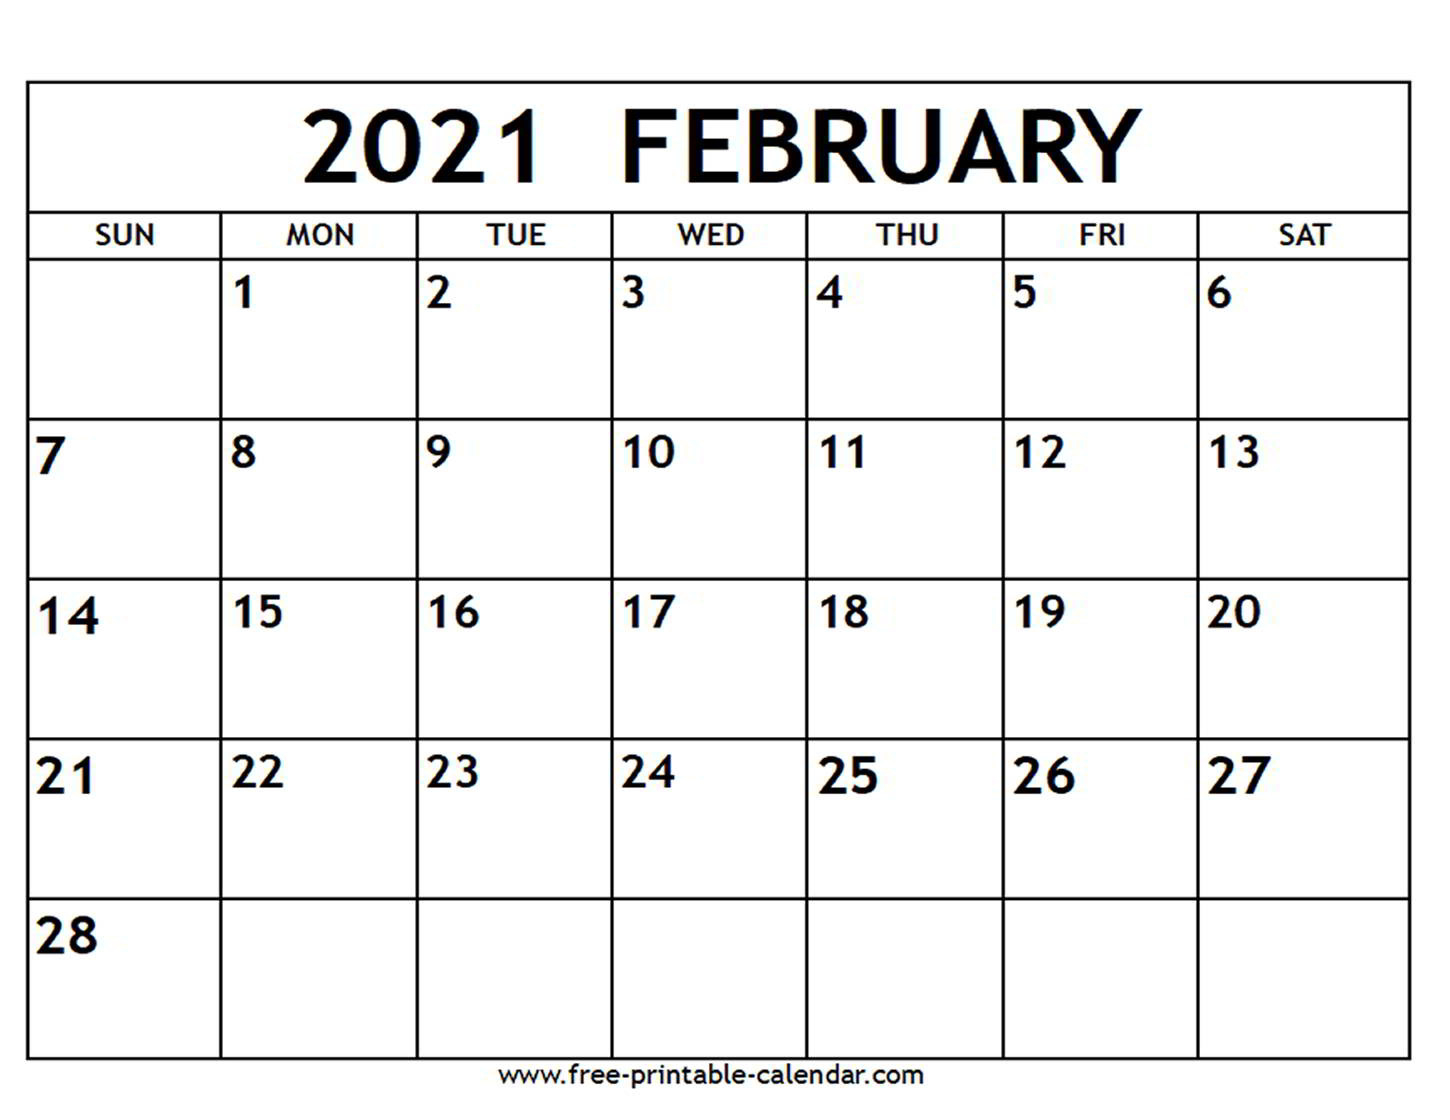 2021 Printable Calendar Free | Free Printable Calendar-2021 Yearly Calendar Template Printable Free